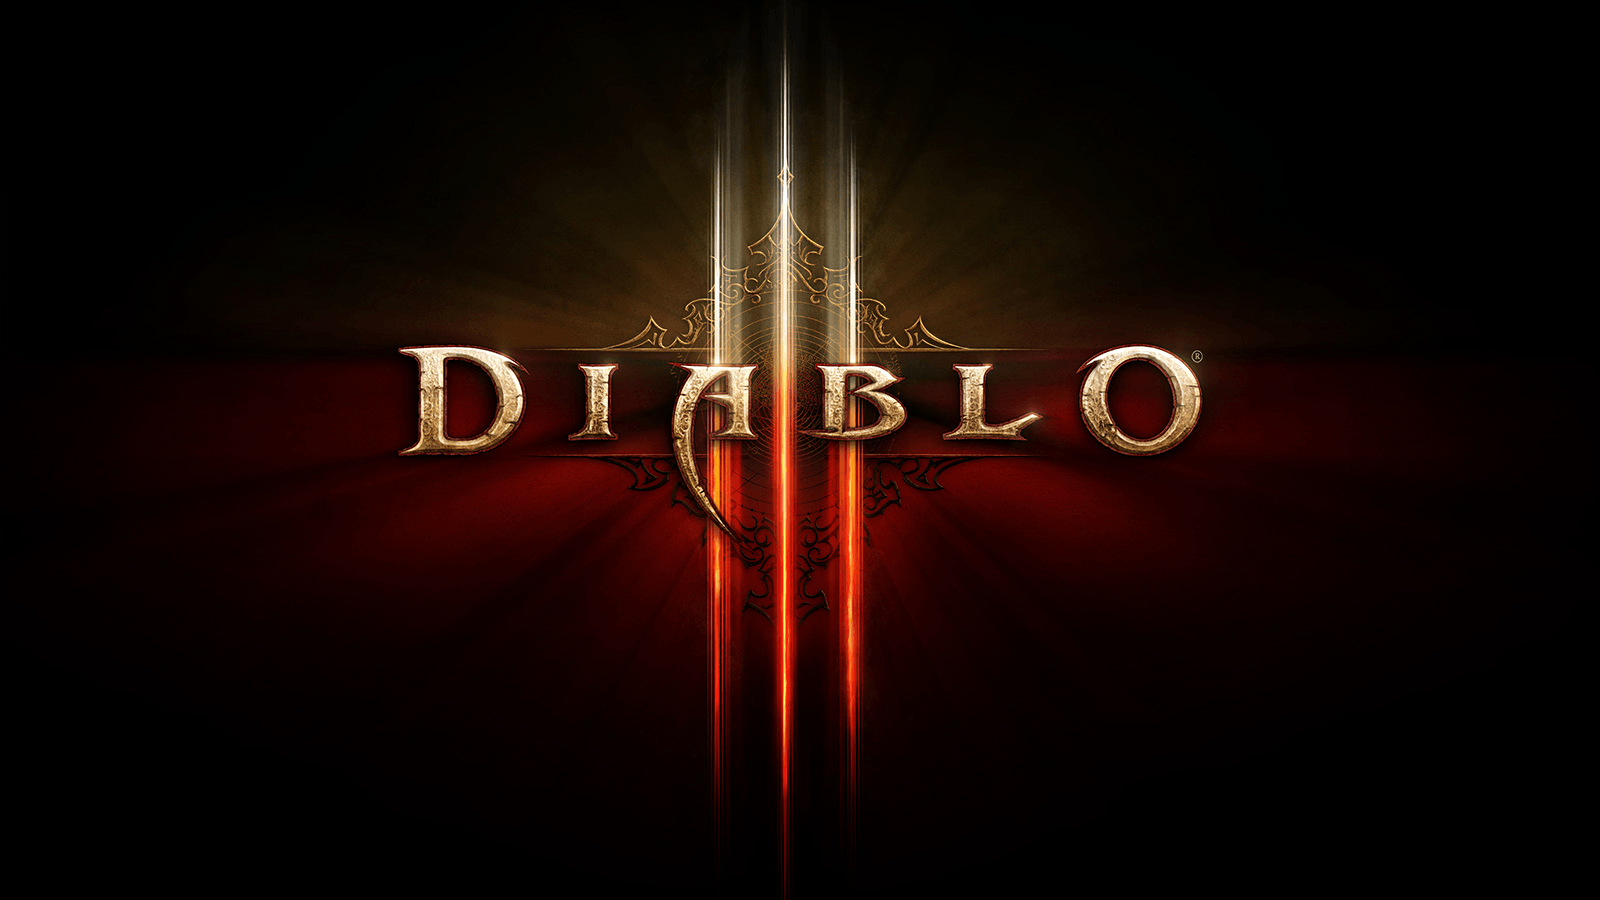 Rumor: Diablo 3 for Nintendo Switch Release Date Leaked